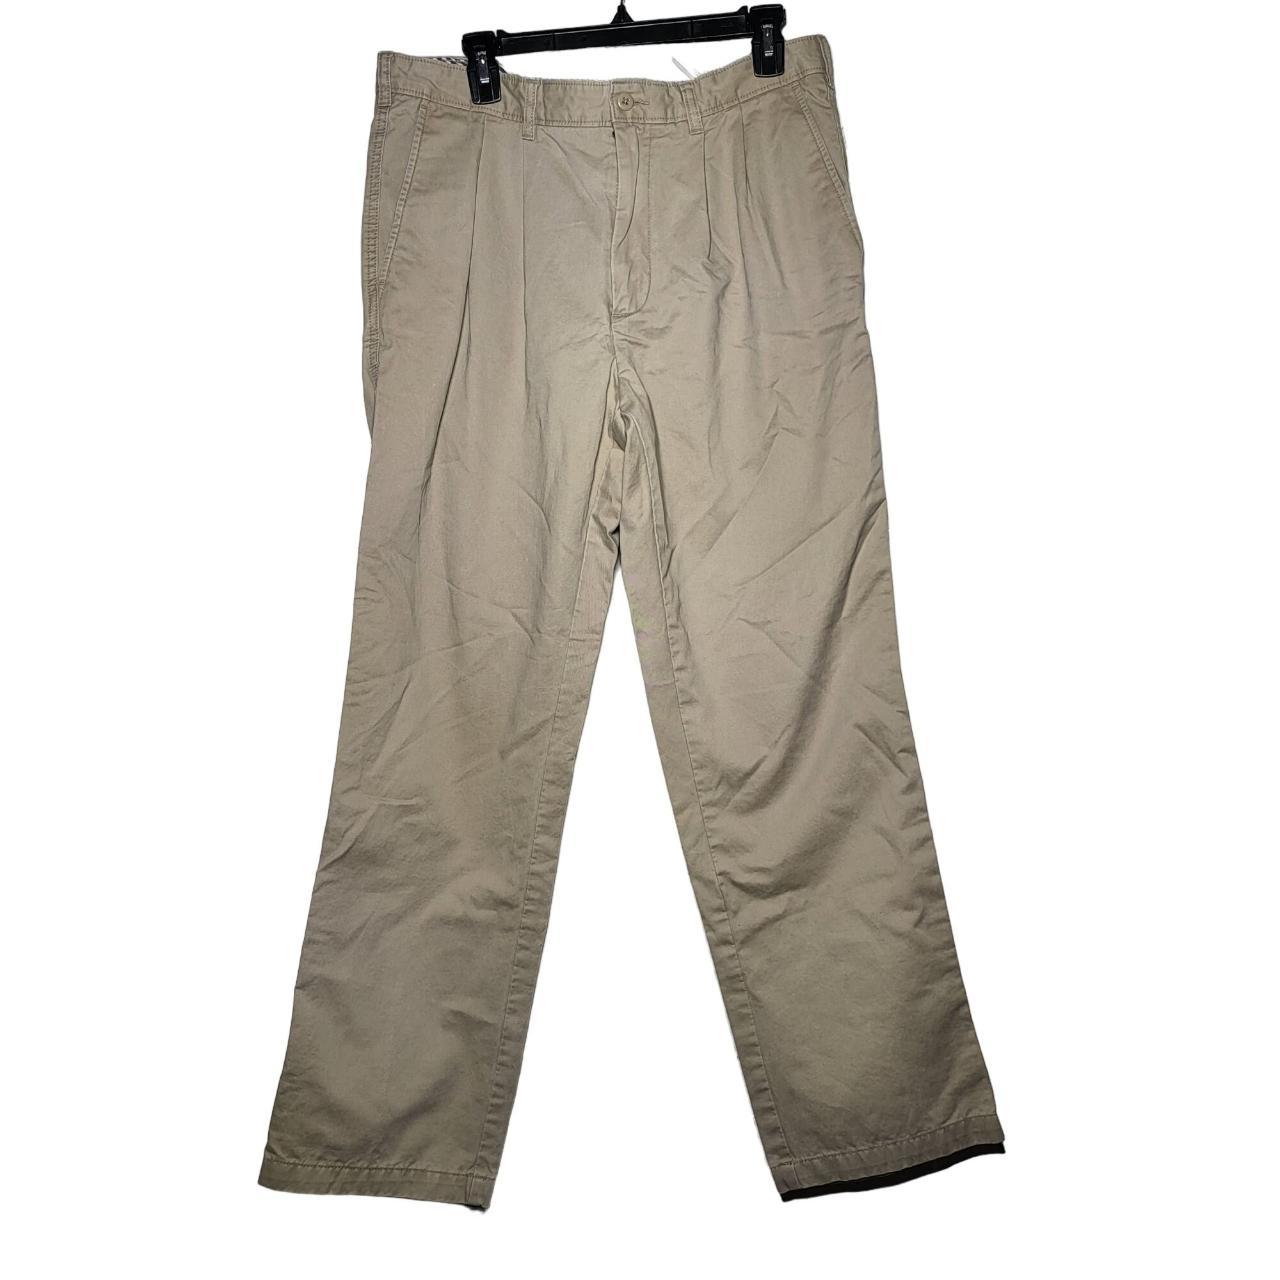 Cremieux Clinton Tan Pants Size: 34/32 Brand:... - Depop